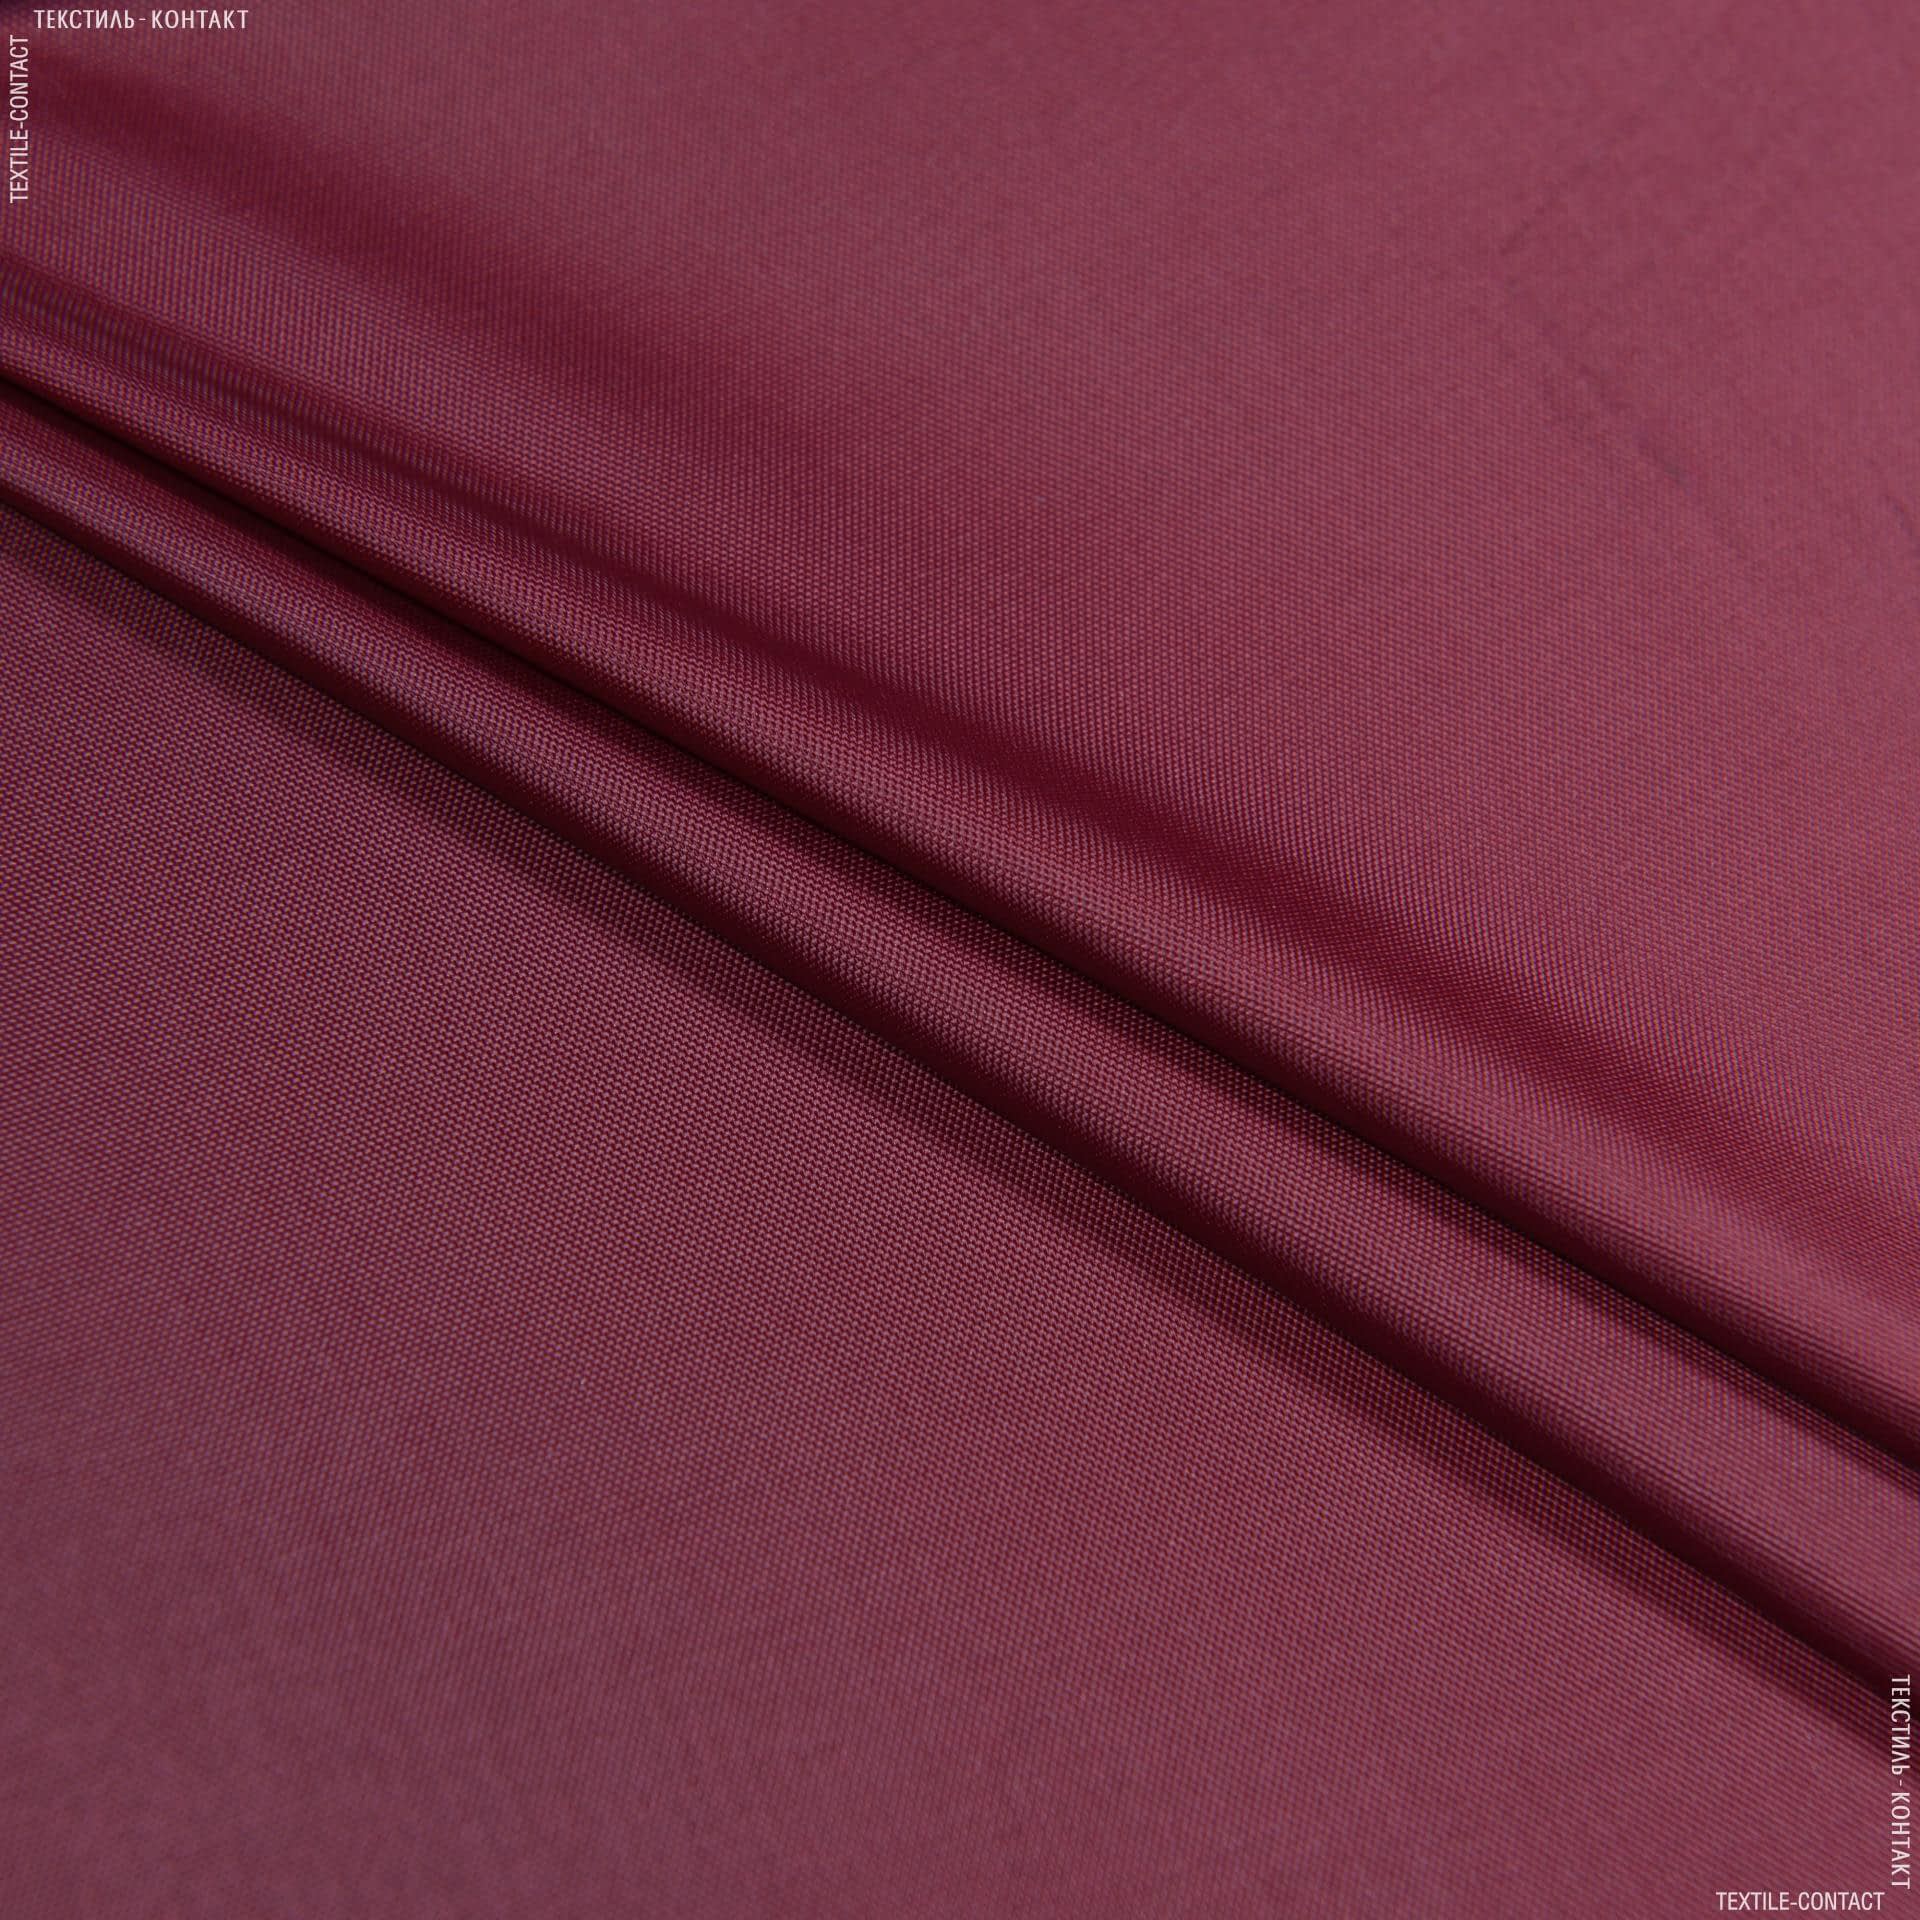 Ткани для верхней одежды - Болония сильвер вишневый